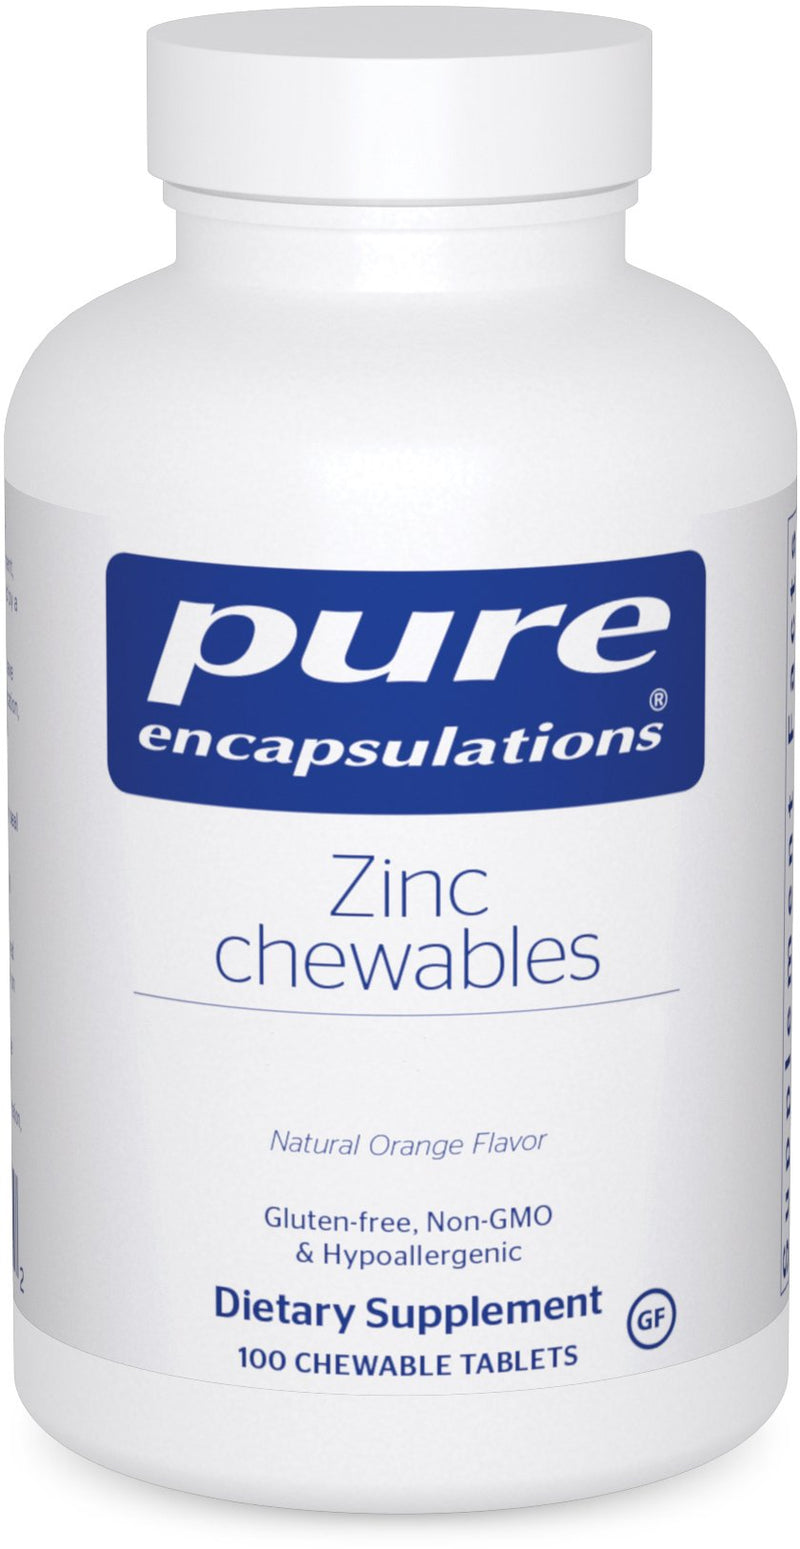 Zinc Chewables by Pure Encapsulations 100 Chewable Tablets